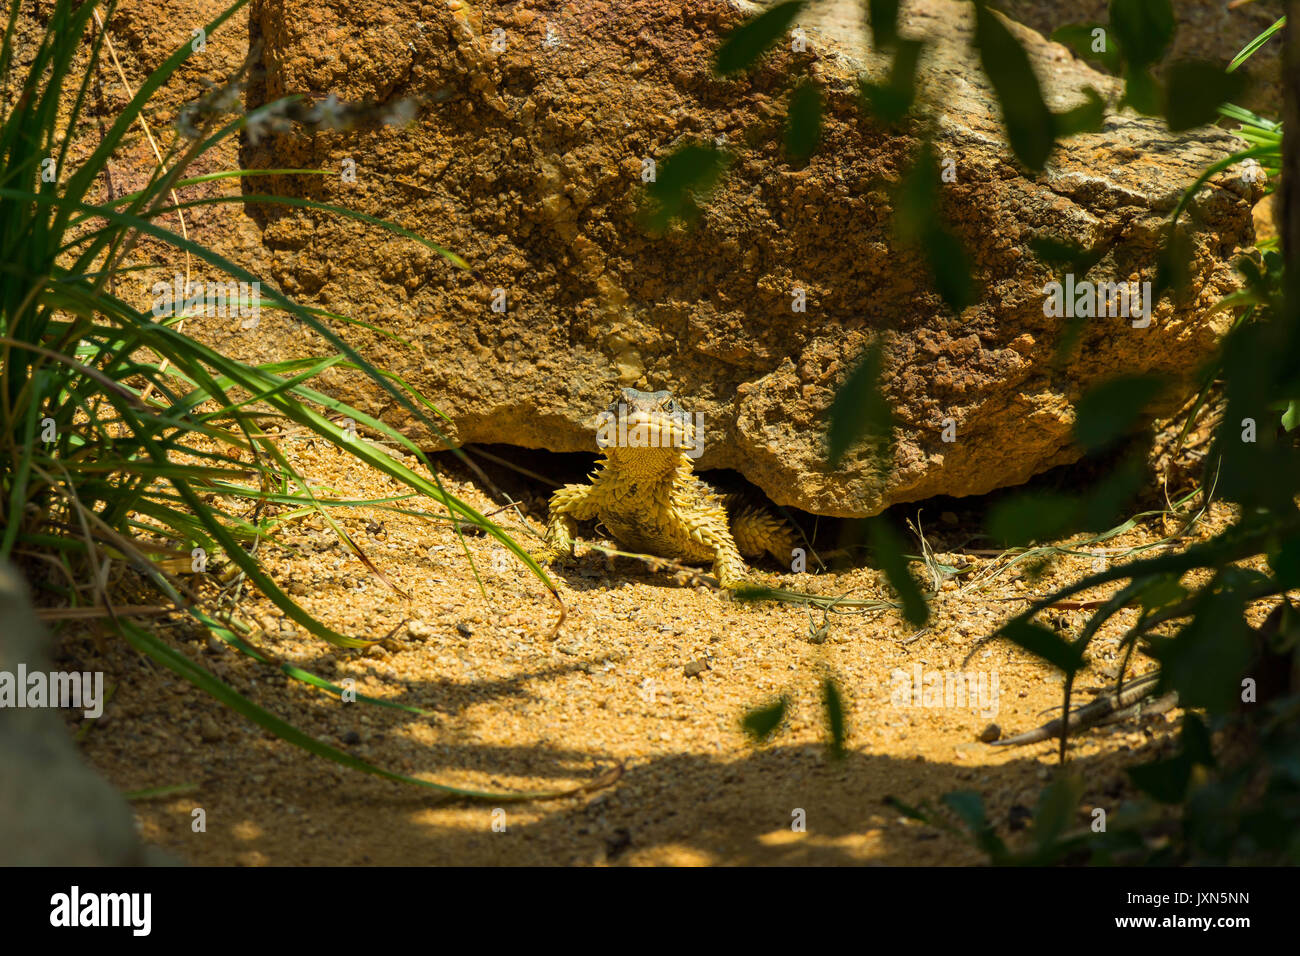 Sungazer peeking out from sous une roche dans le soleil Banque D'Images